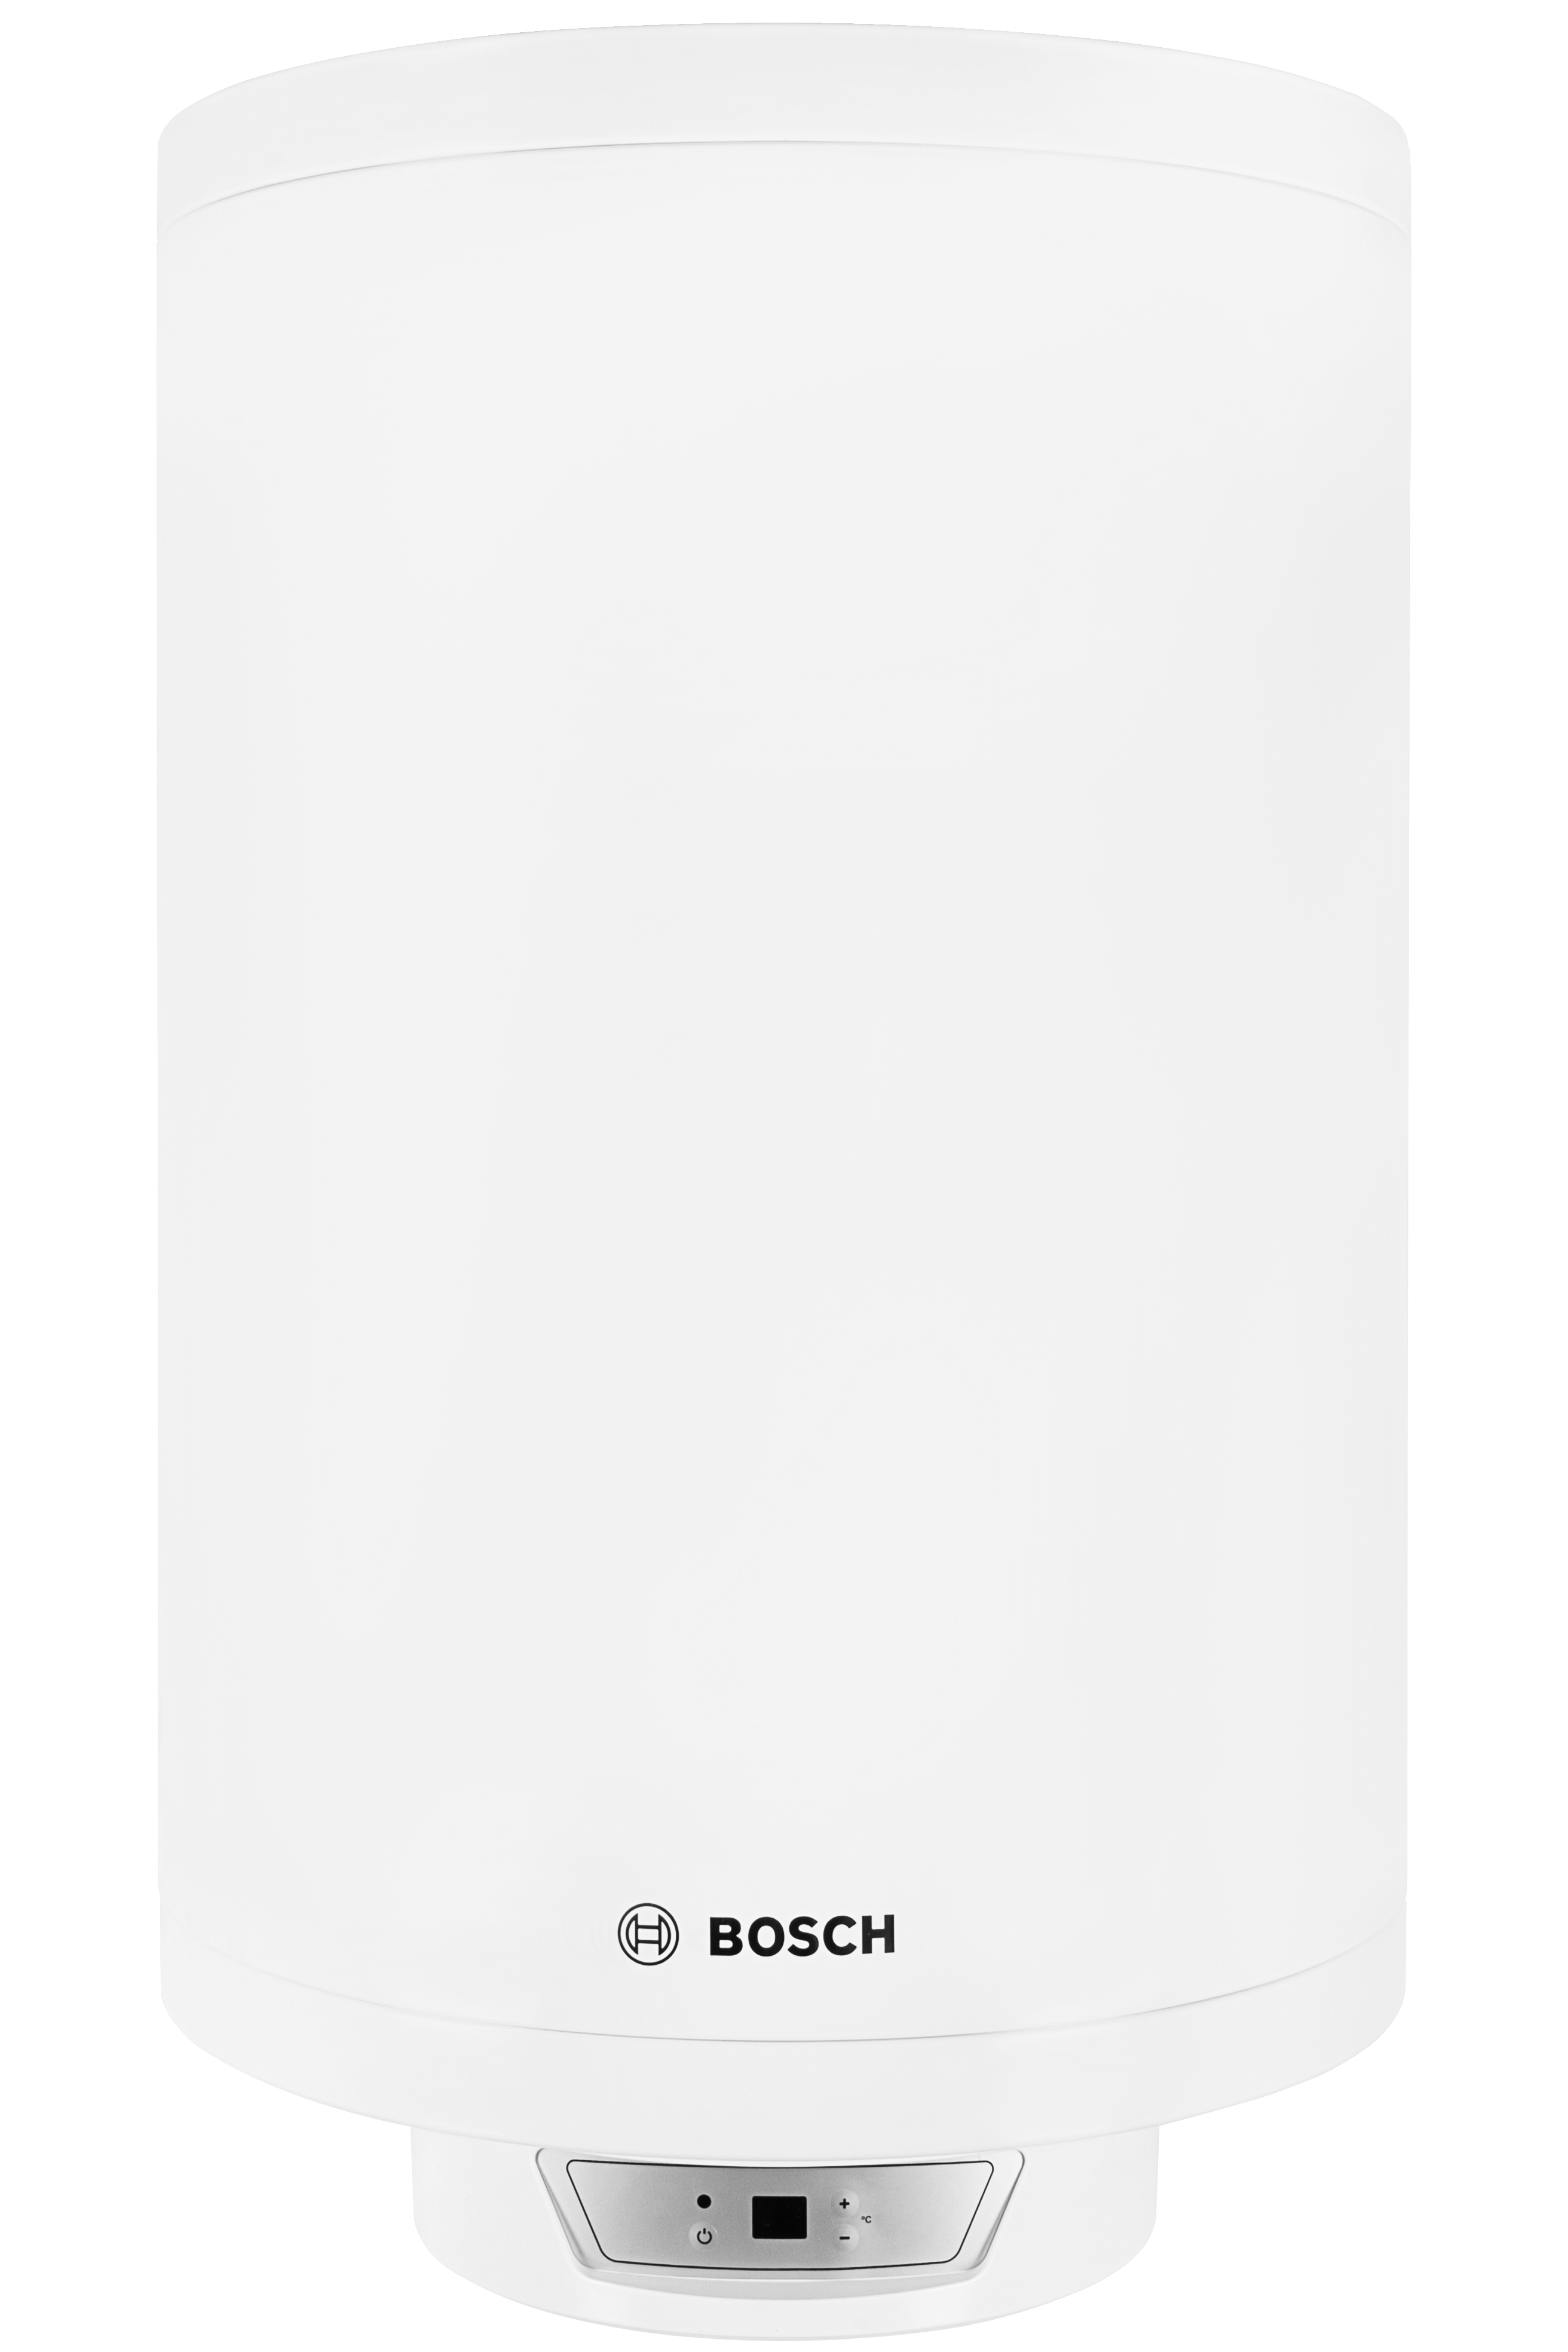 Отзывы бойлер горизонтальный на 80 л Bosch Tronic 8000T ES 080-5 2000W BO H1X-EDWRB (7736503147) в Украине